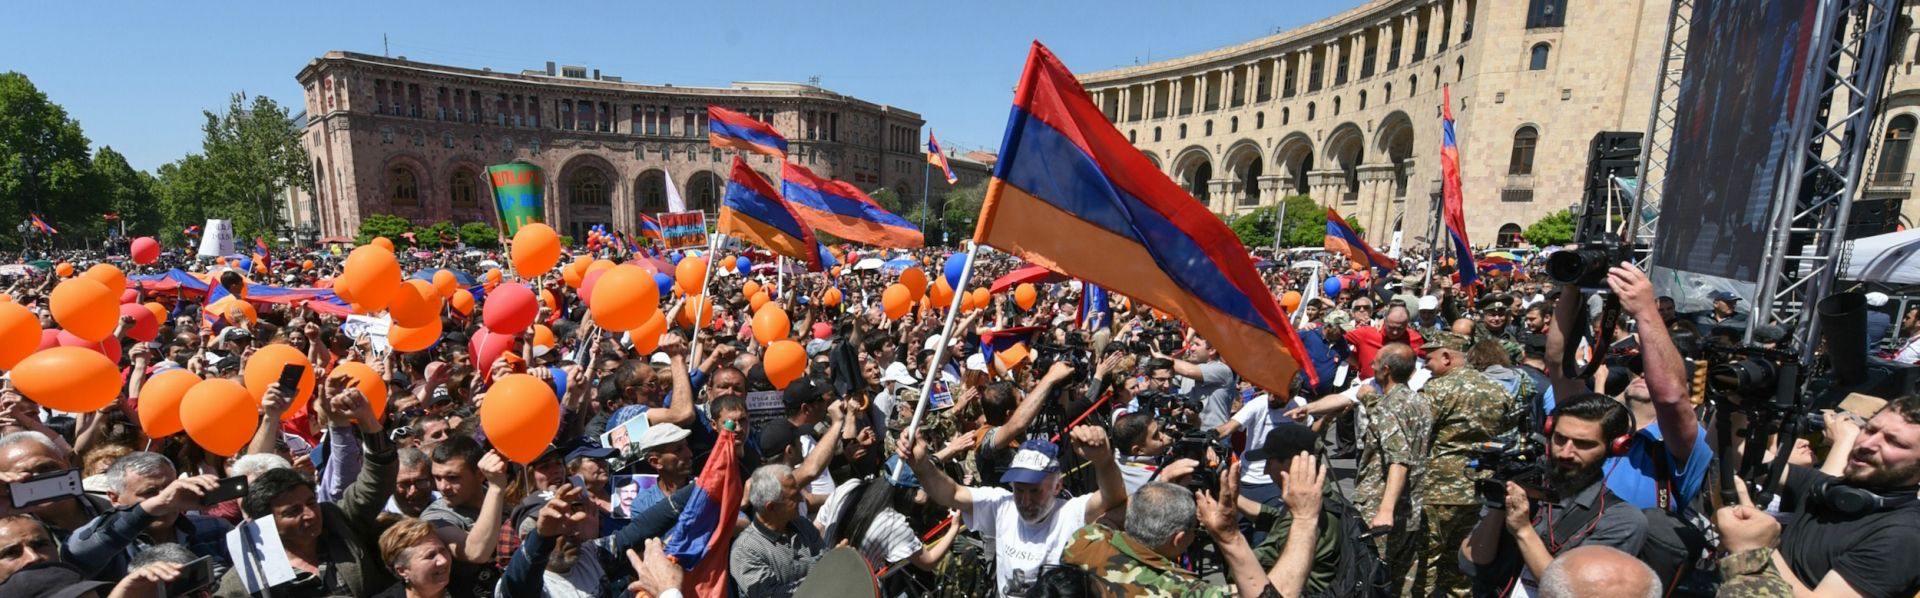 Трудовая армения сегодня. Бархатная революция в Армении 2018. Ереван население. День гражданина в Армении. Картинки день граждан в Армении картинки.